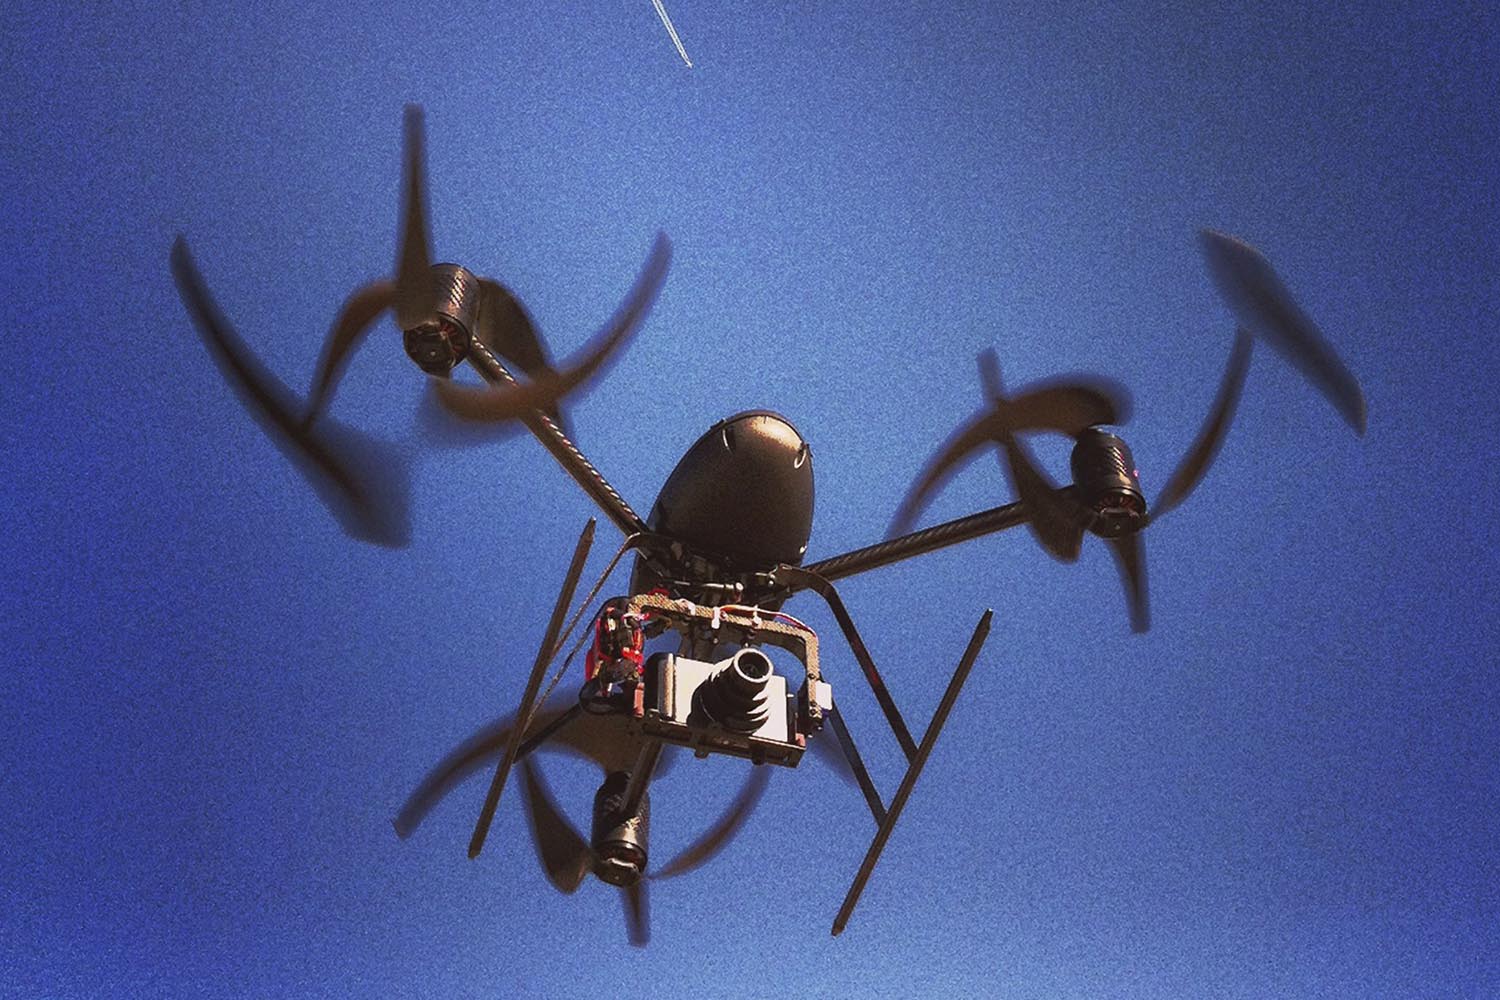 Especial Drones. El ‘drone’ Draganflyer X6 puede volar a 50 km/h y subir hasta los 400 m de altura